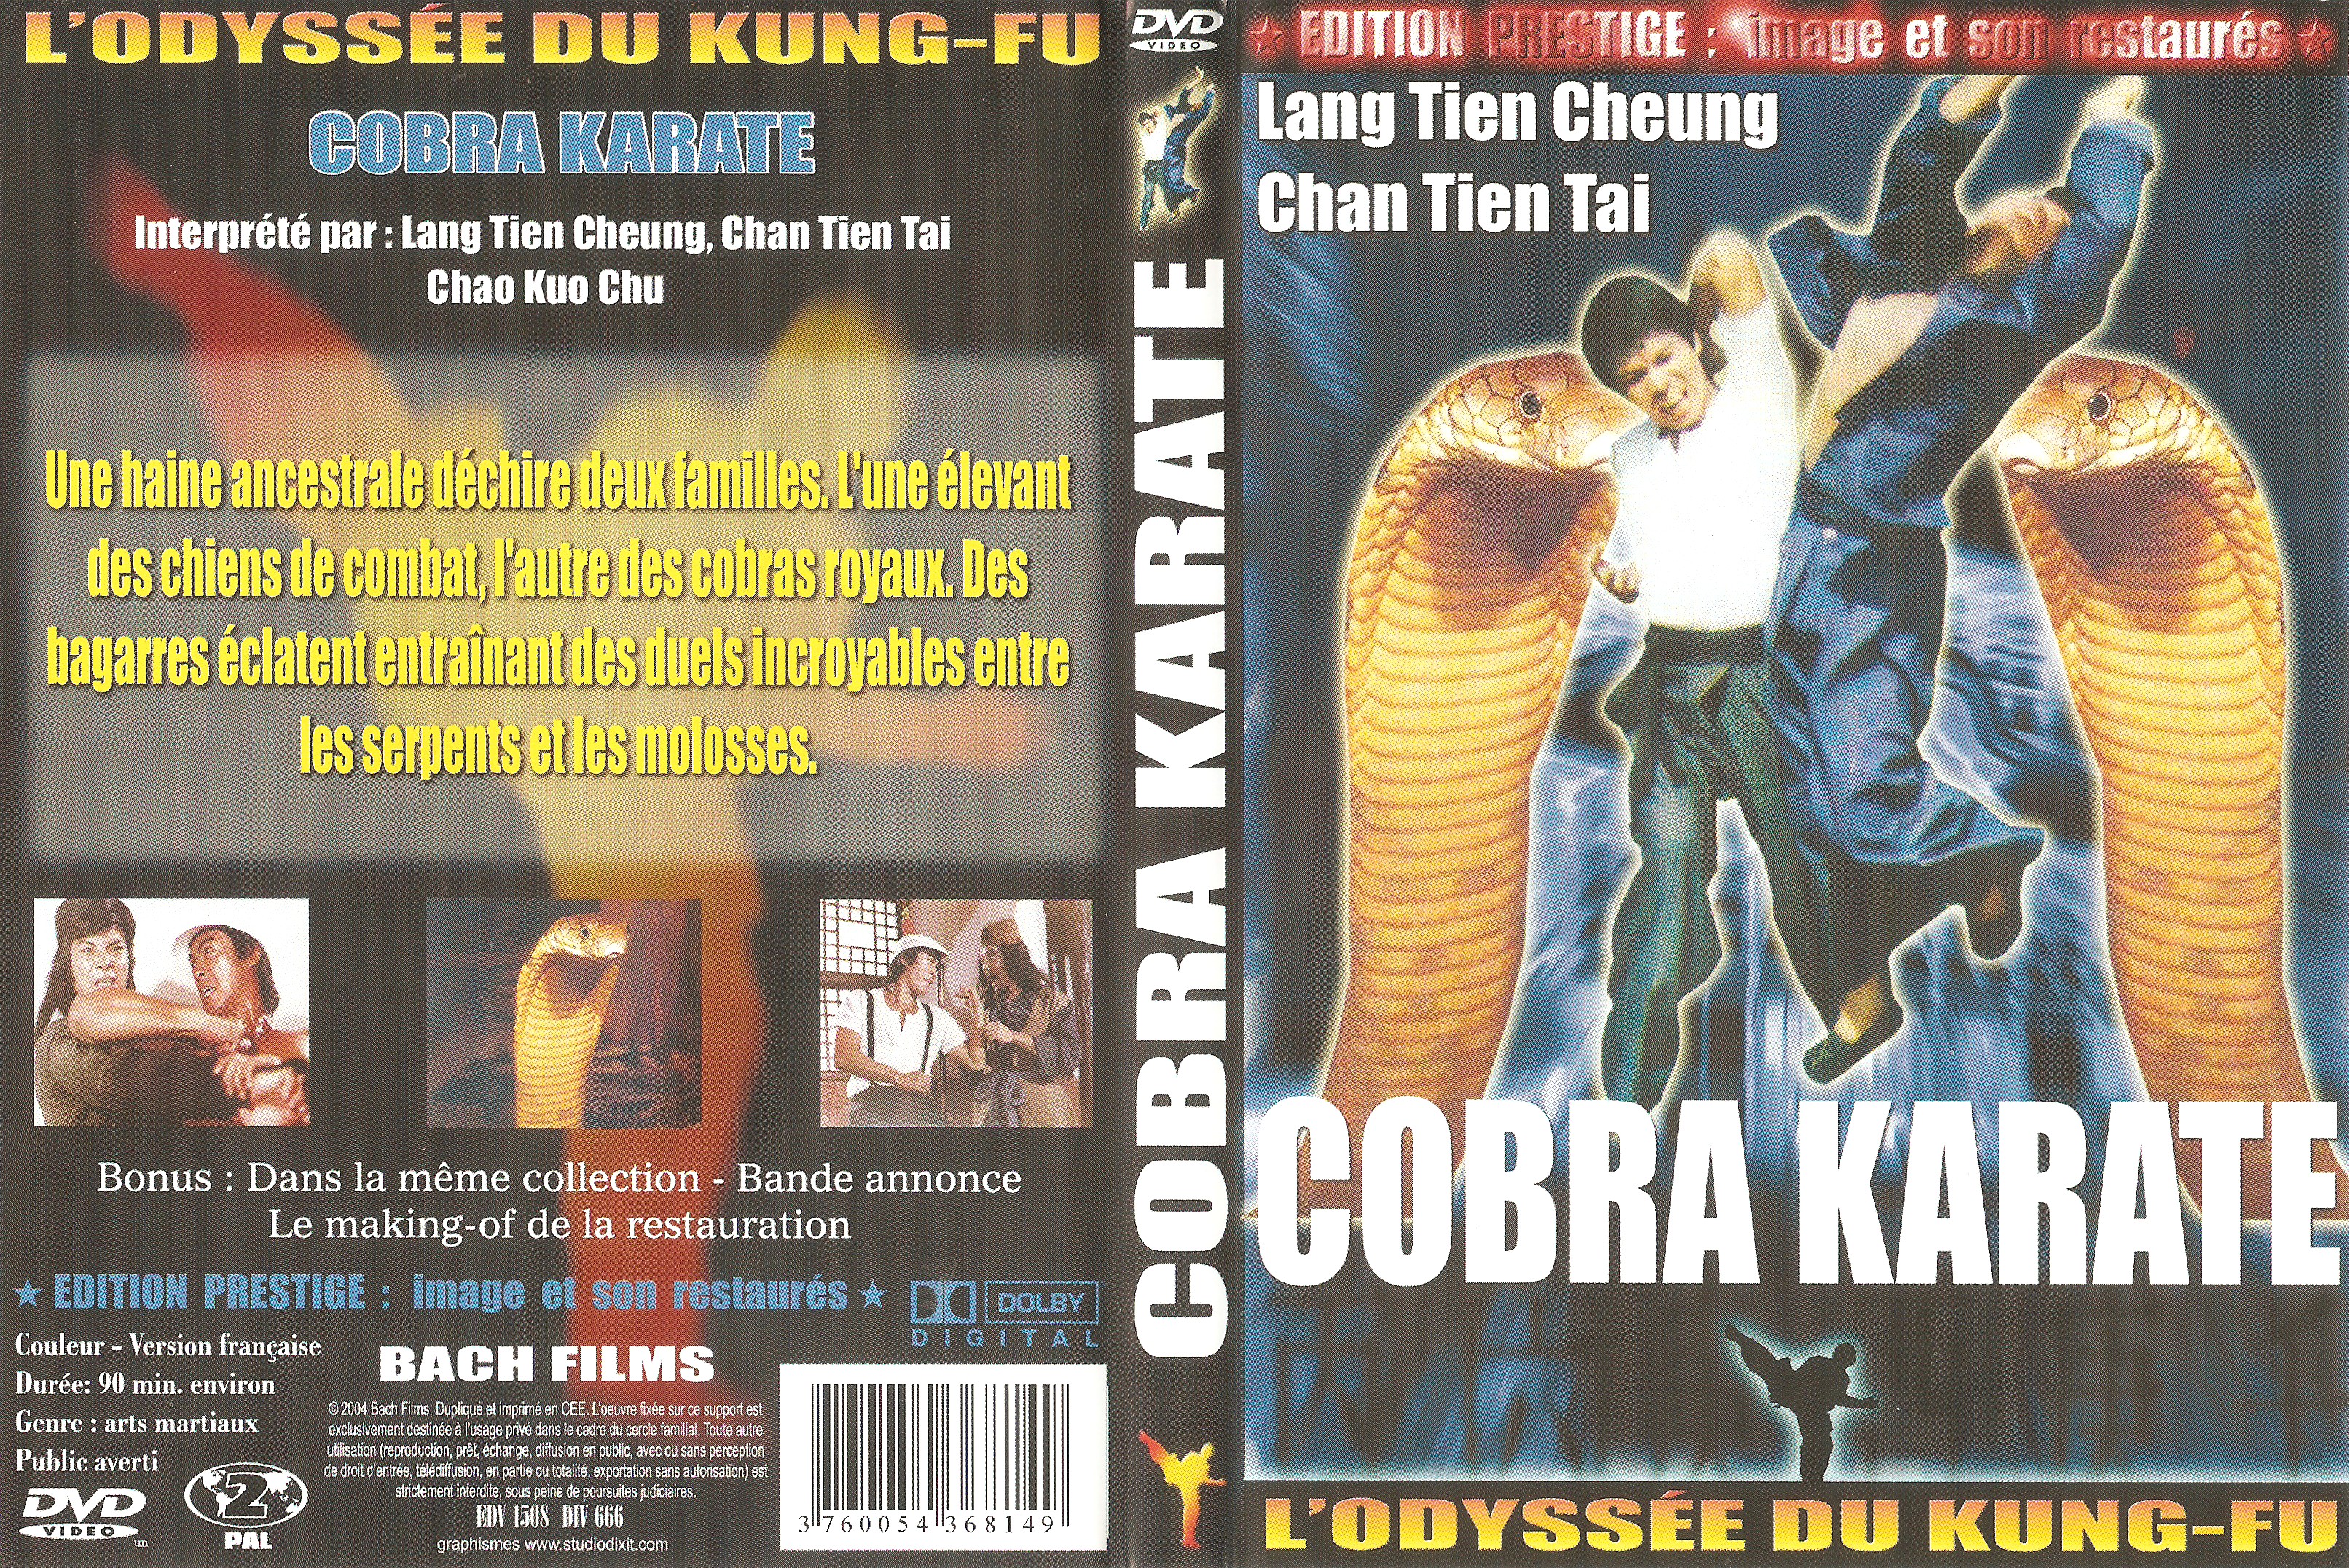 Jaquette DVD Cobra karate